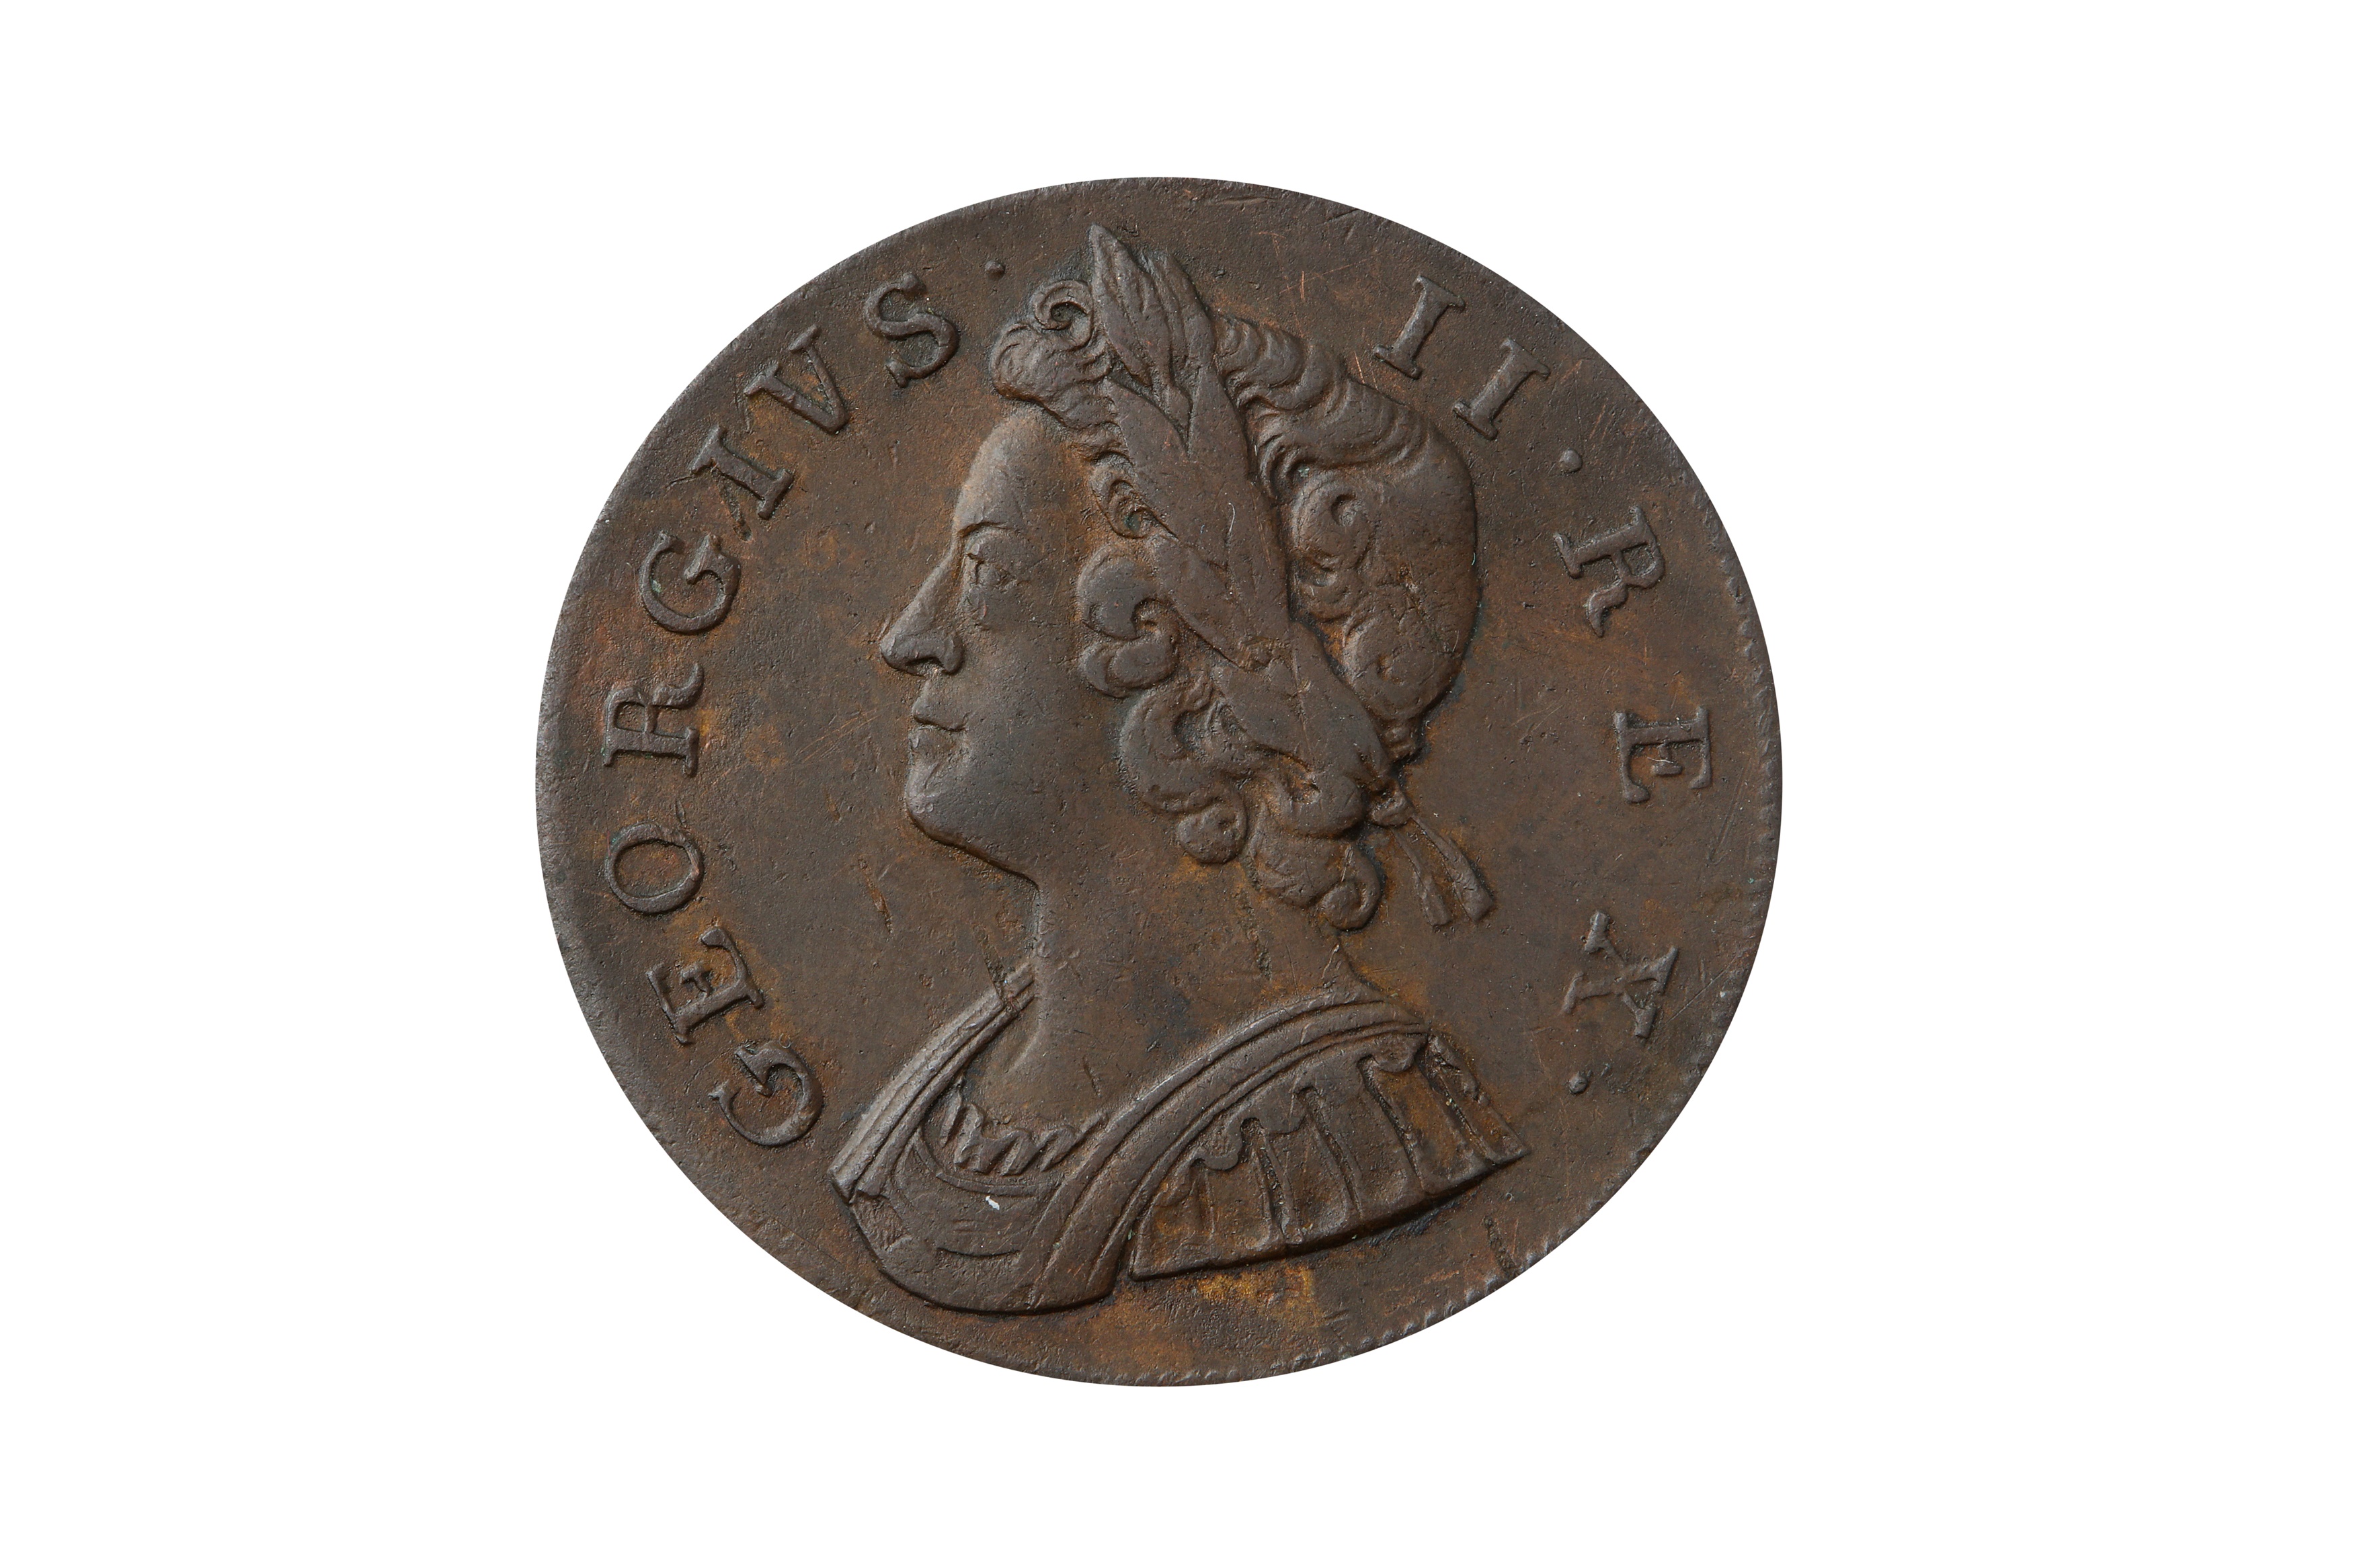 GEORGE II (1727 - 1760), 1739 HALFPENNY.